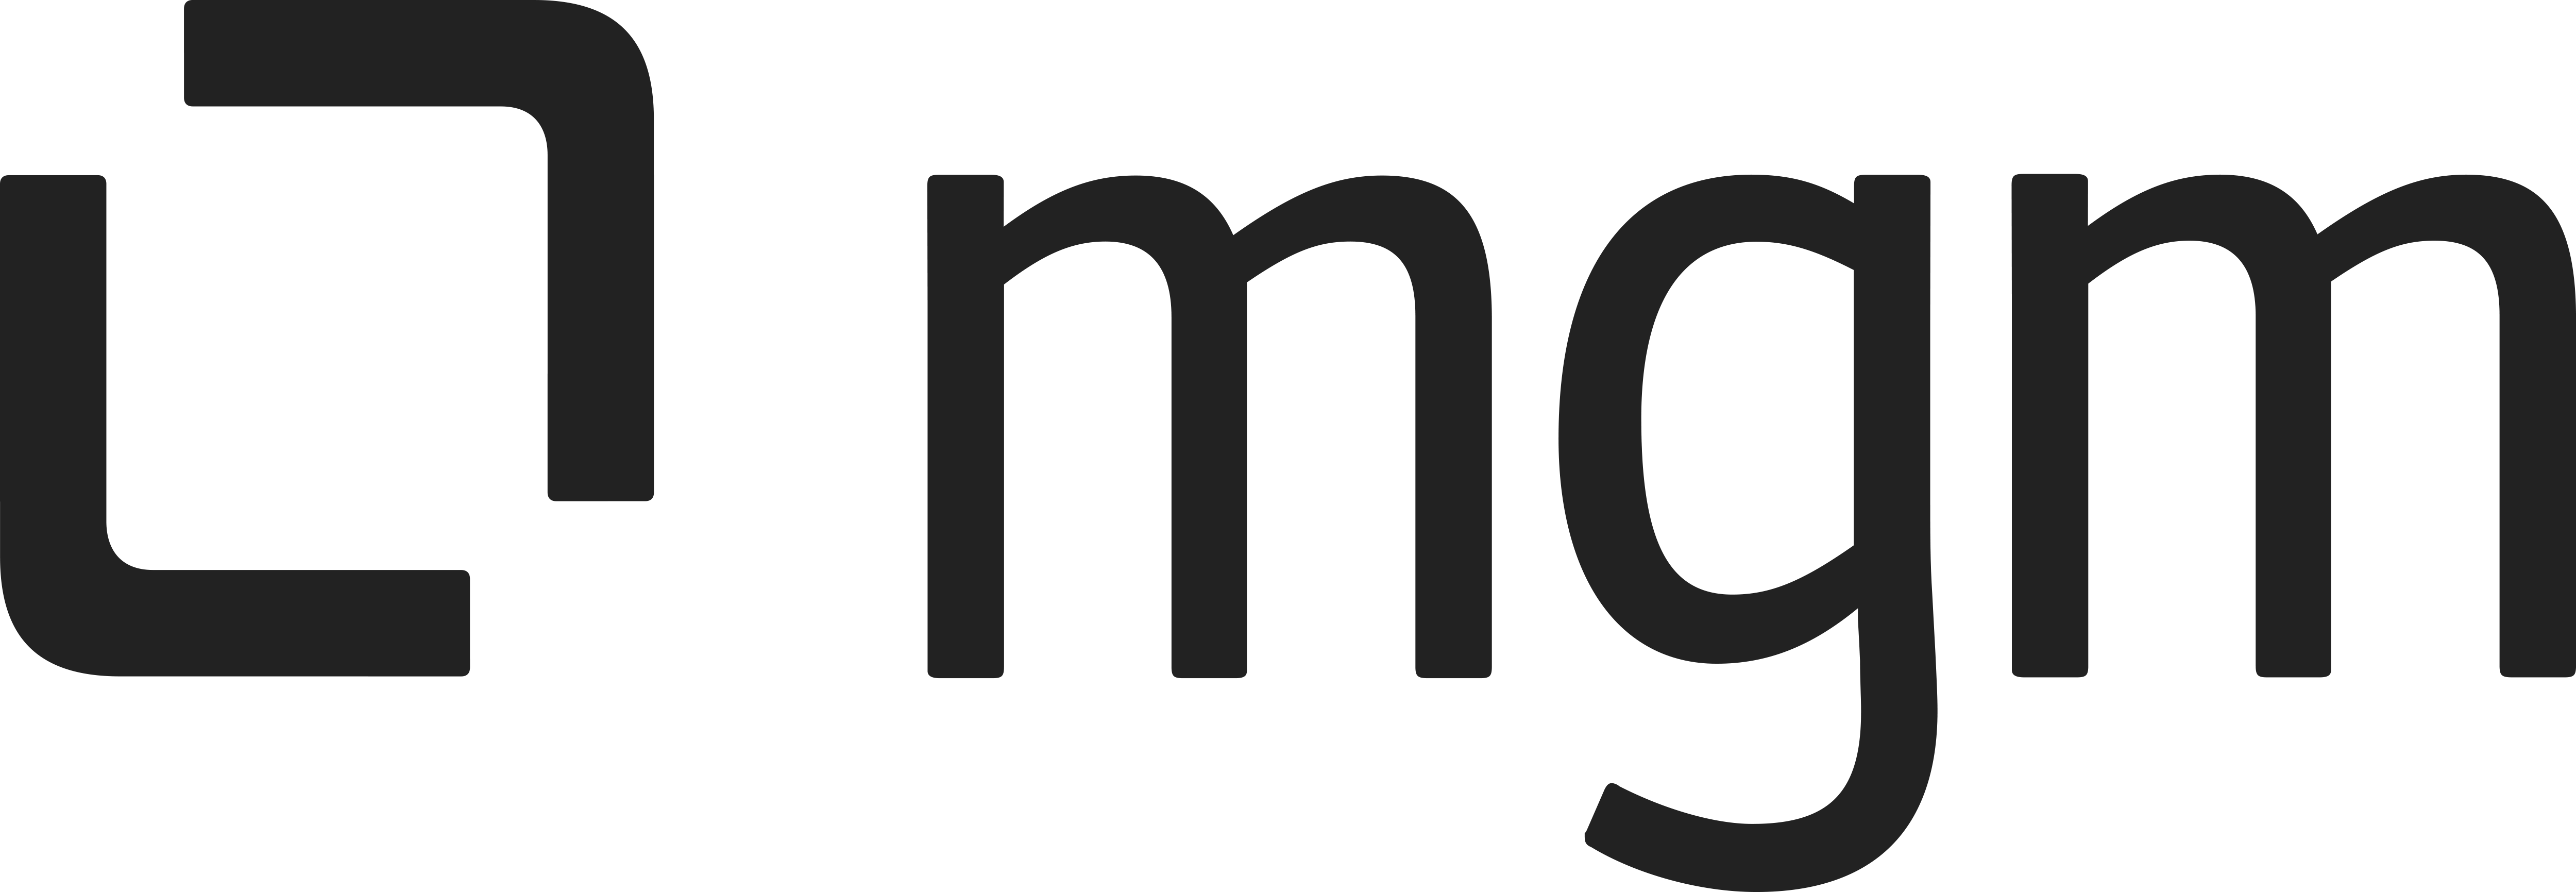 mgm technology partners GmbH Logo